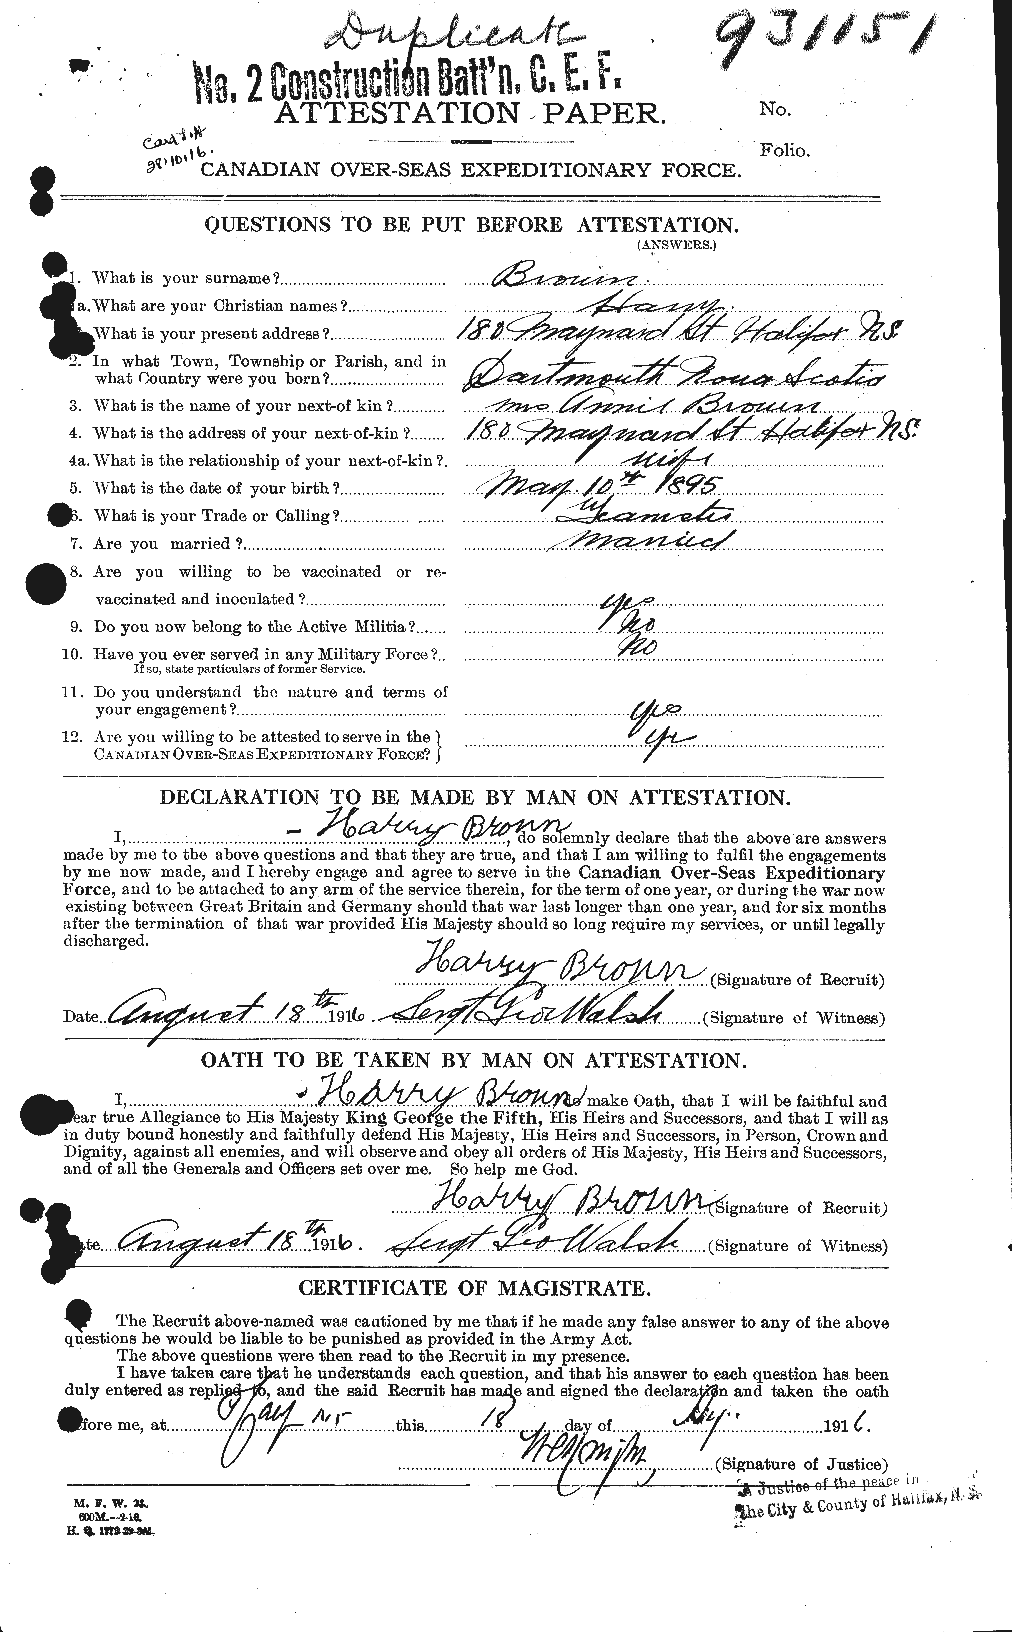 Dossiers du Personnel de la Première Guerre mondiale - CEC 266743a